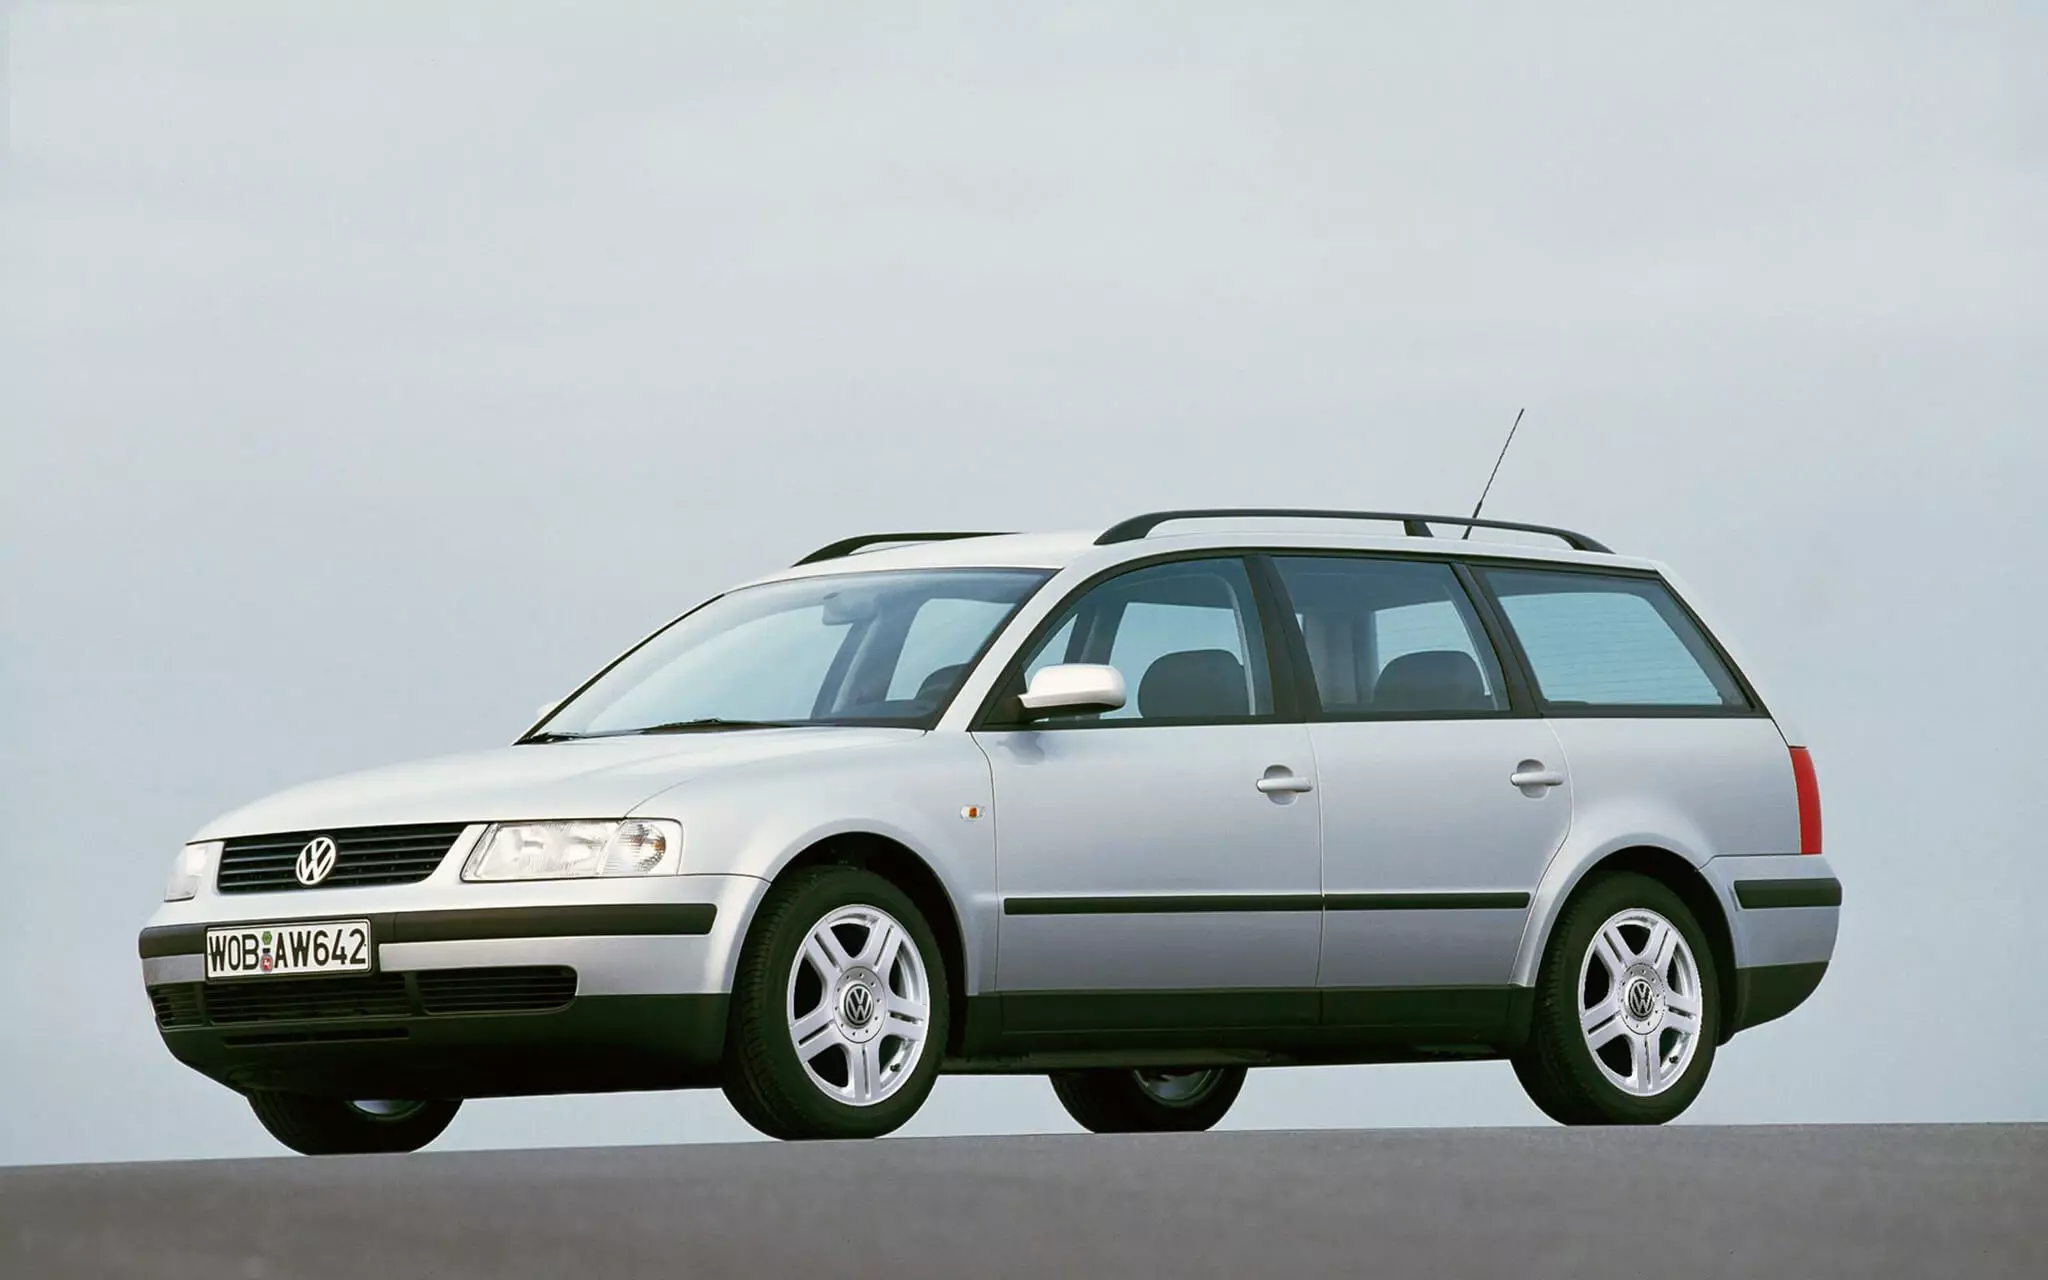 Volkswagen b5 универсал. Volkswagen Passat b5 variant. Volkswagen Passat b5 универсал. Фольксваген Пассат b5 универсал. Volkswagen Passat variant b5 универсал.